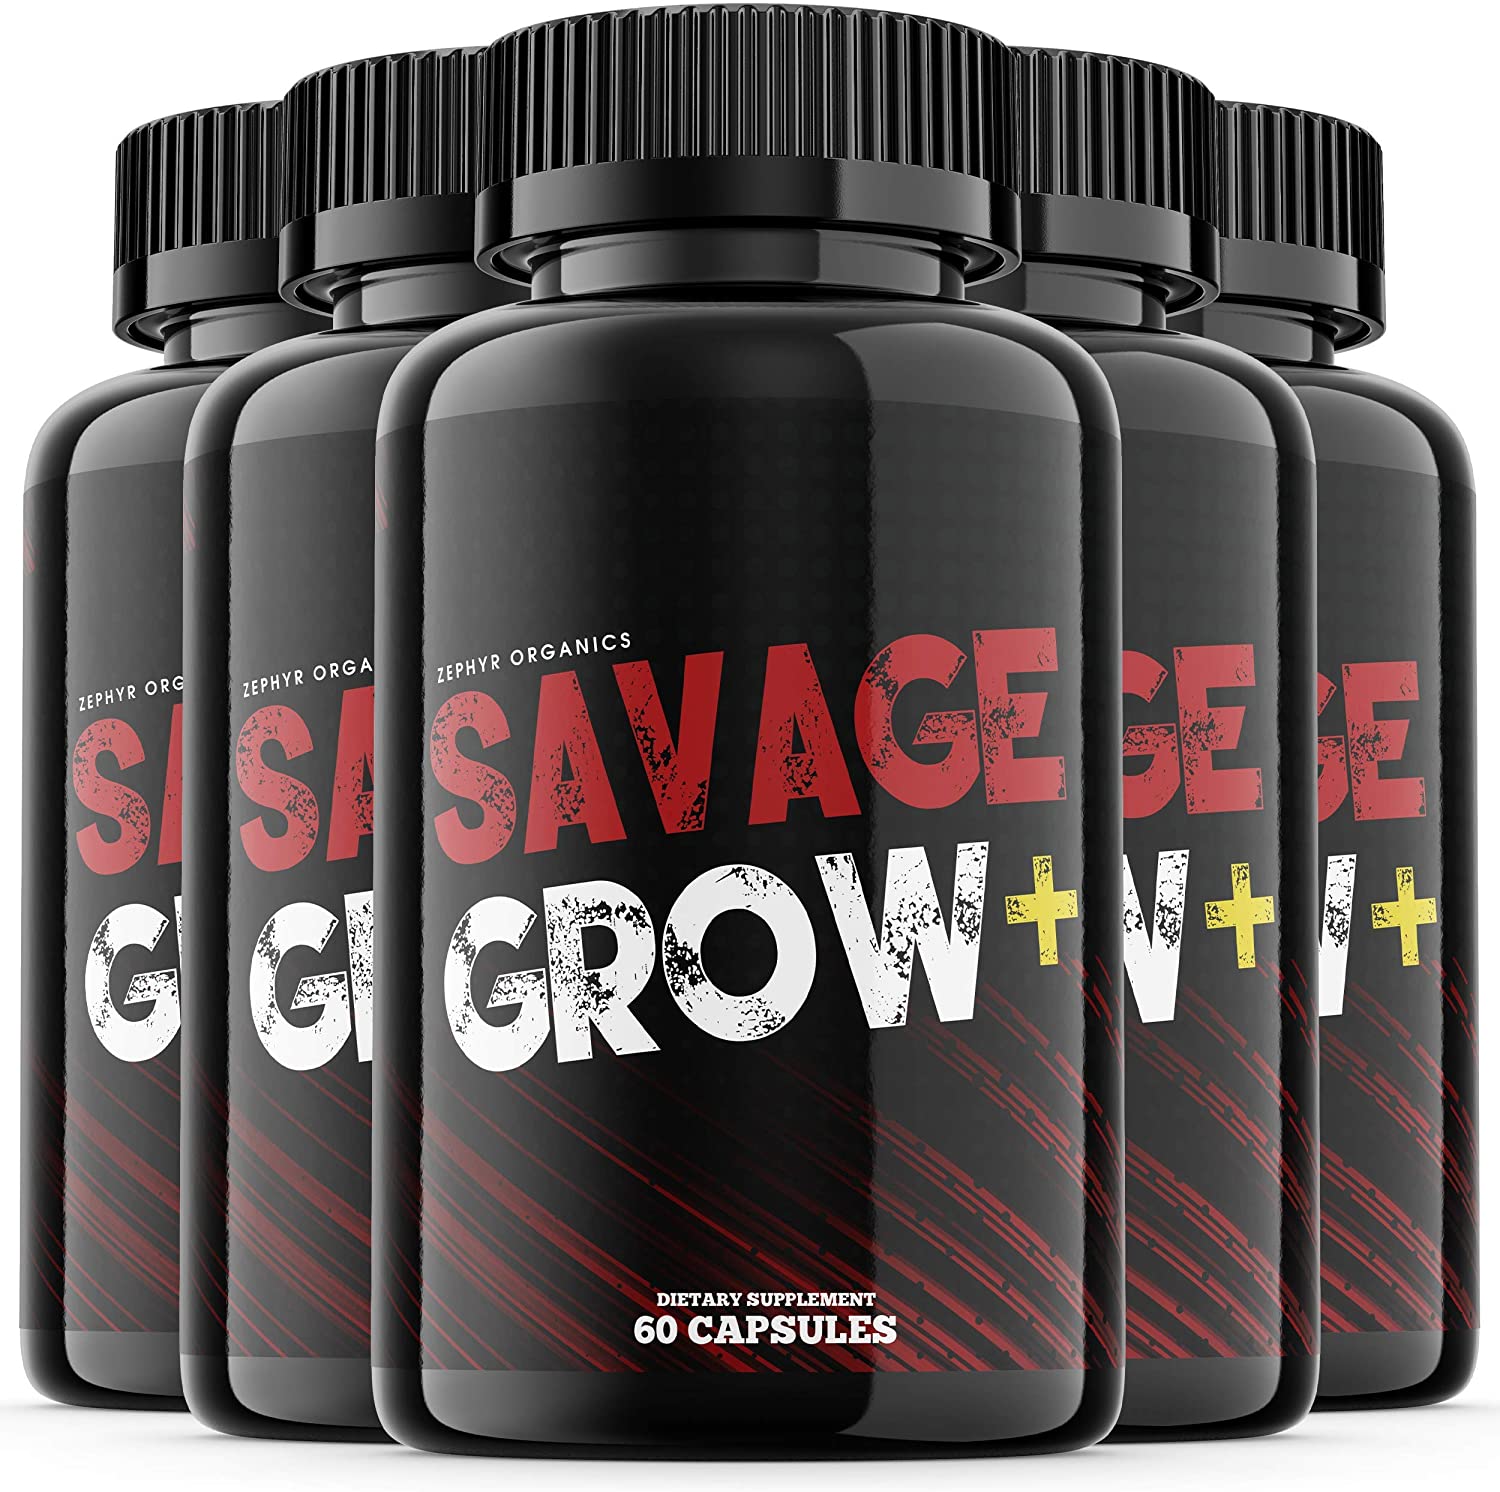 Savage Grow Plus Pills.